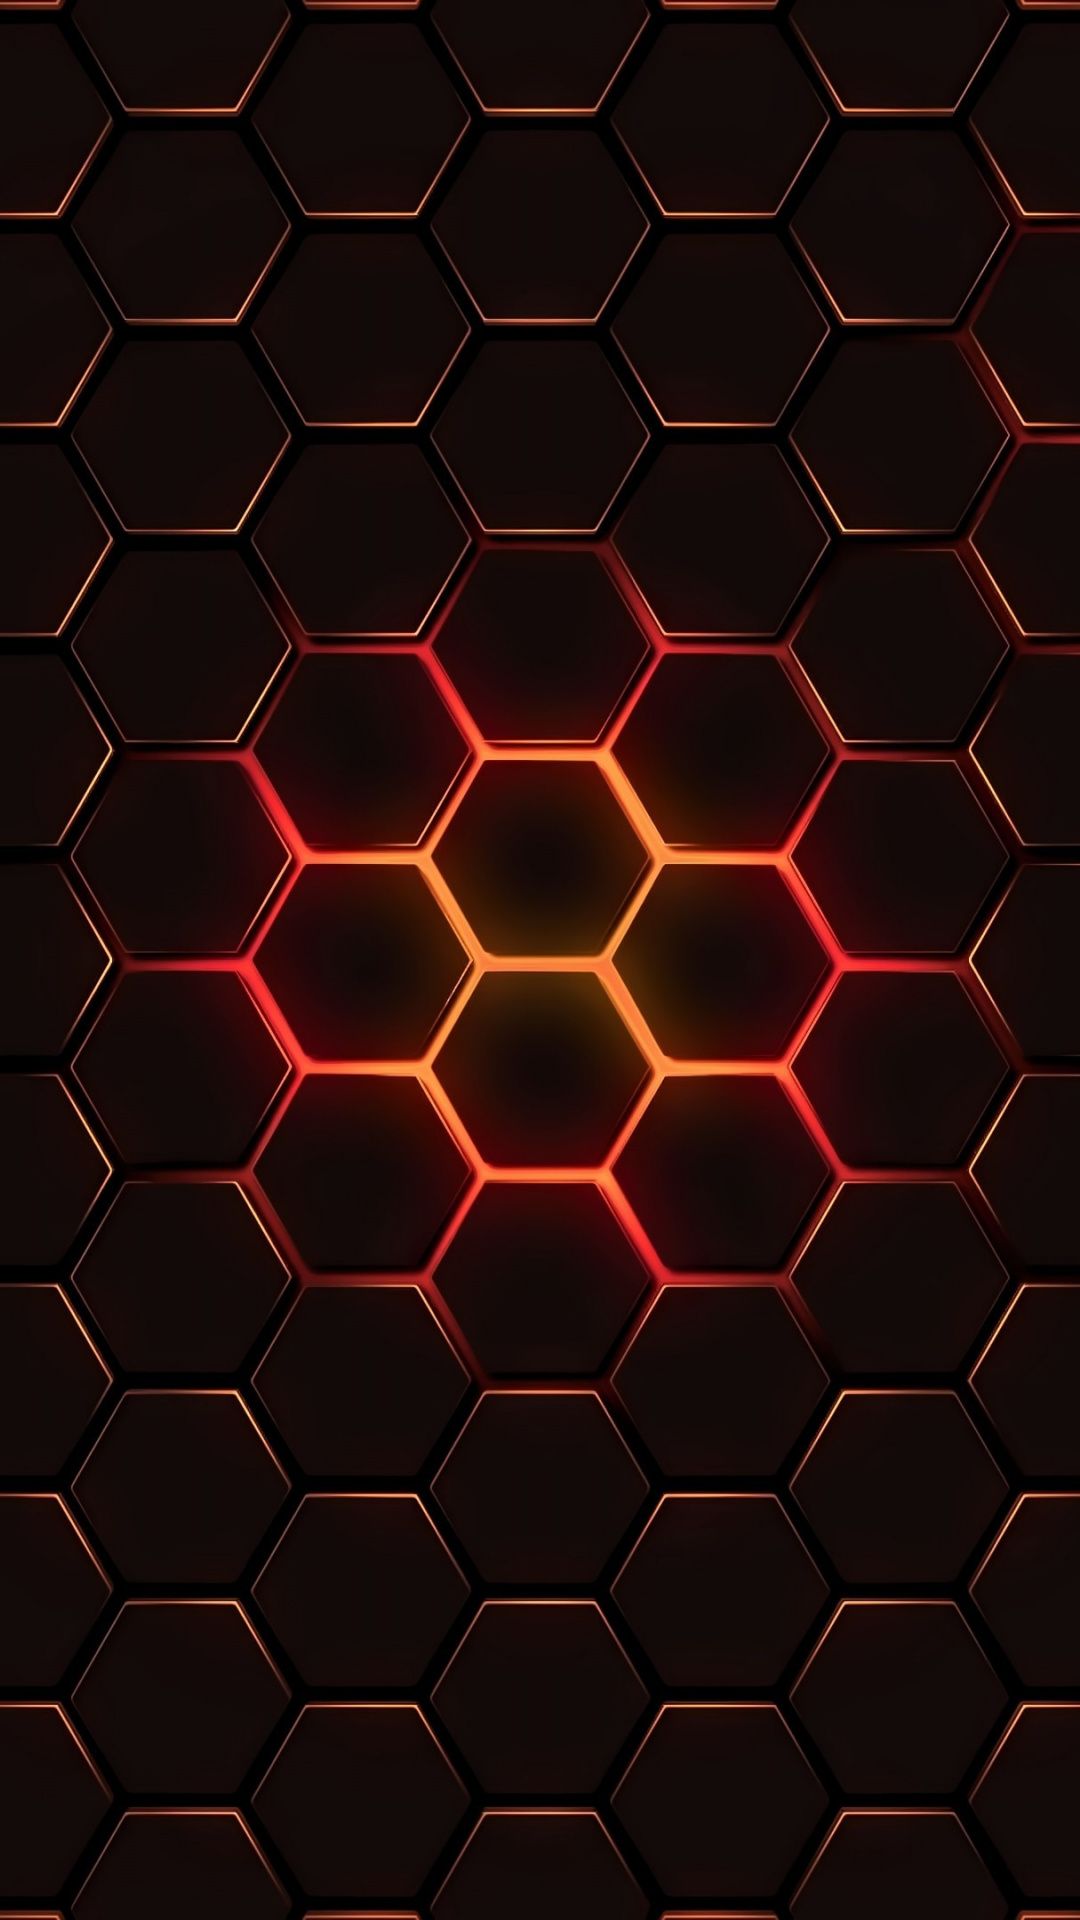 Hexagon 4k обои для iphone 6